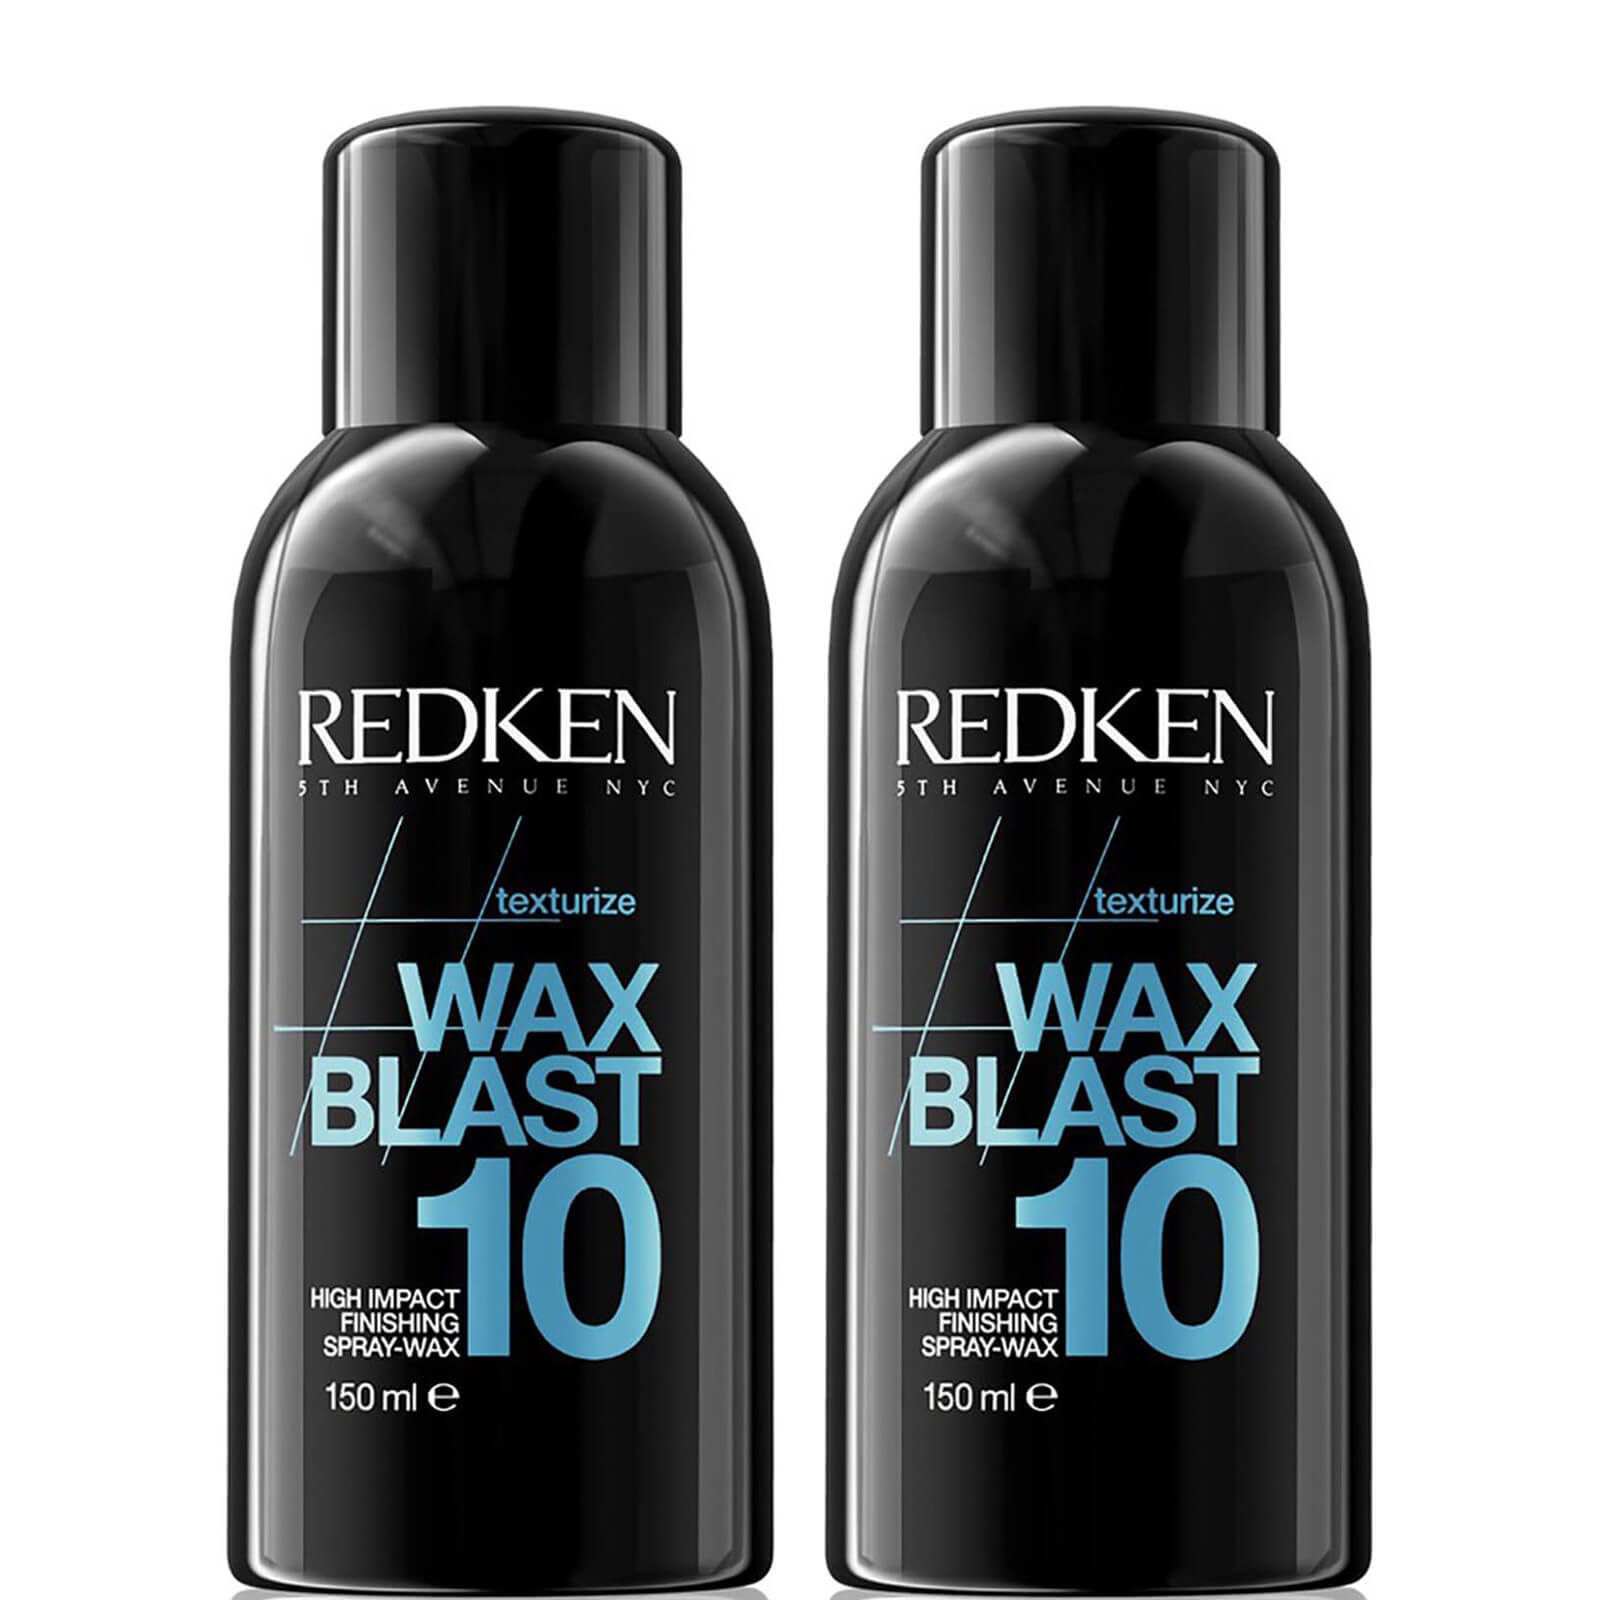 Redken Wax Blast 10 Duo (2 x 150ml)